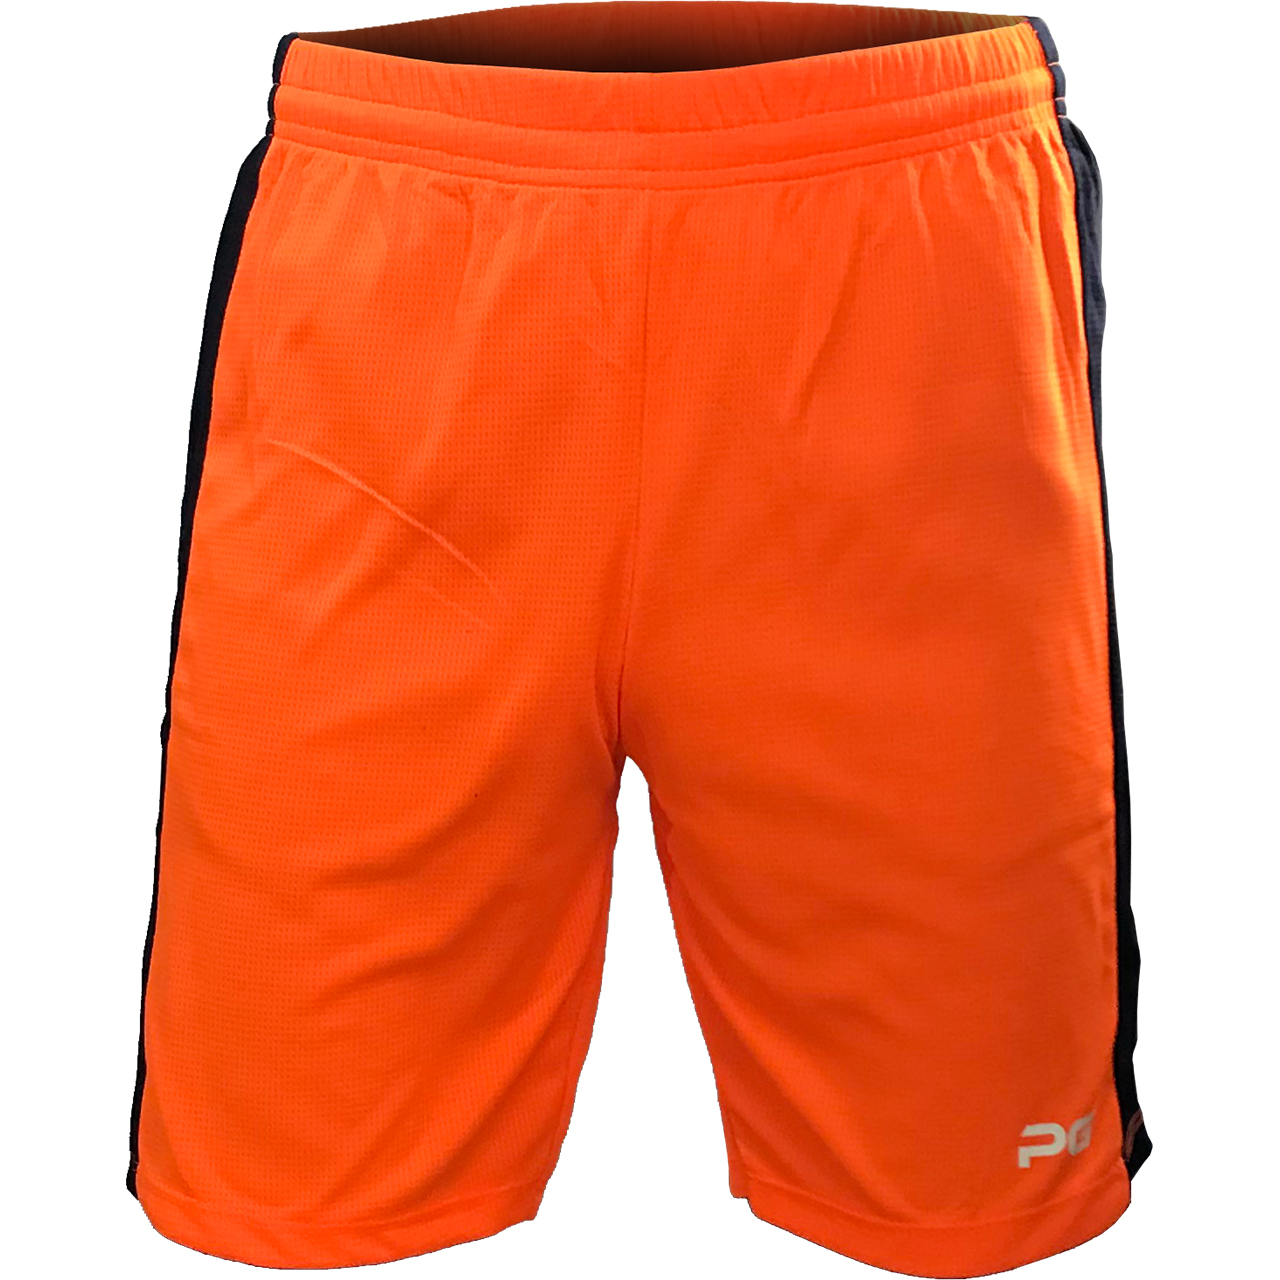 شلوارک ورزشی مردانه پرگان مدل افرا کد 005 رنگ نارنجی